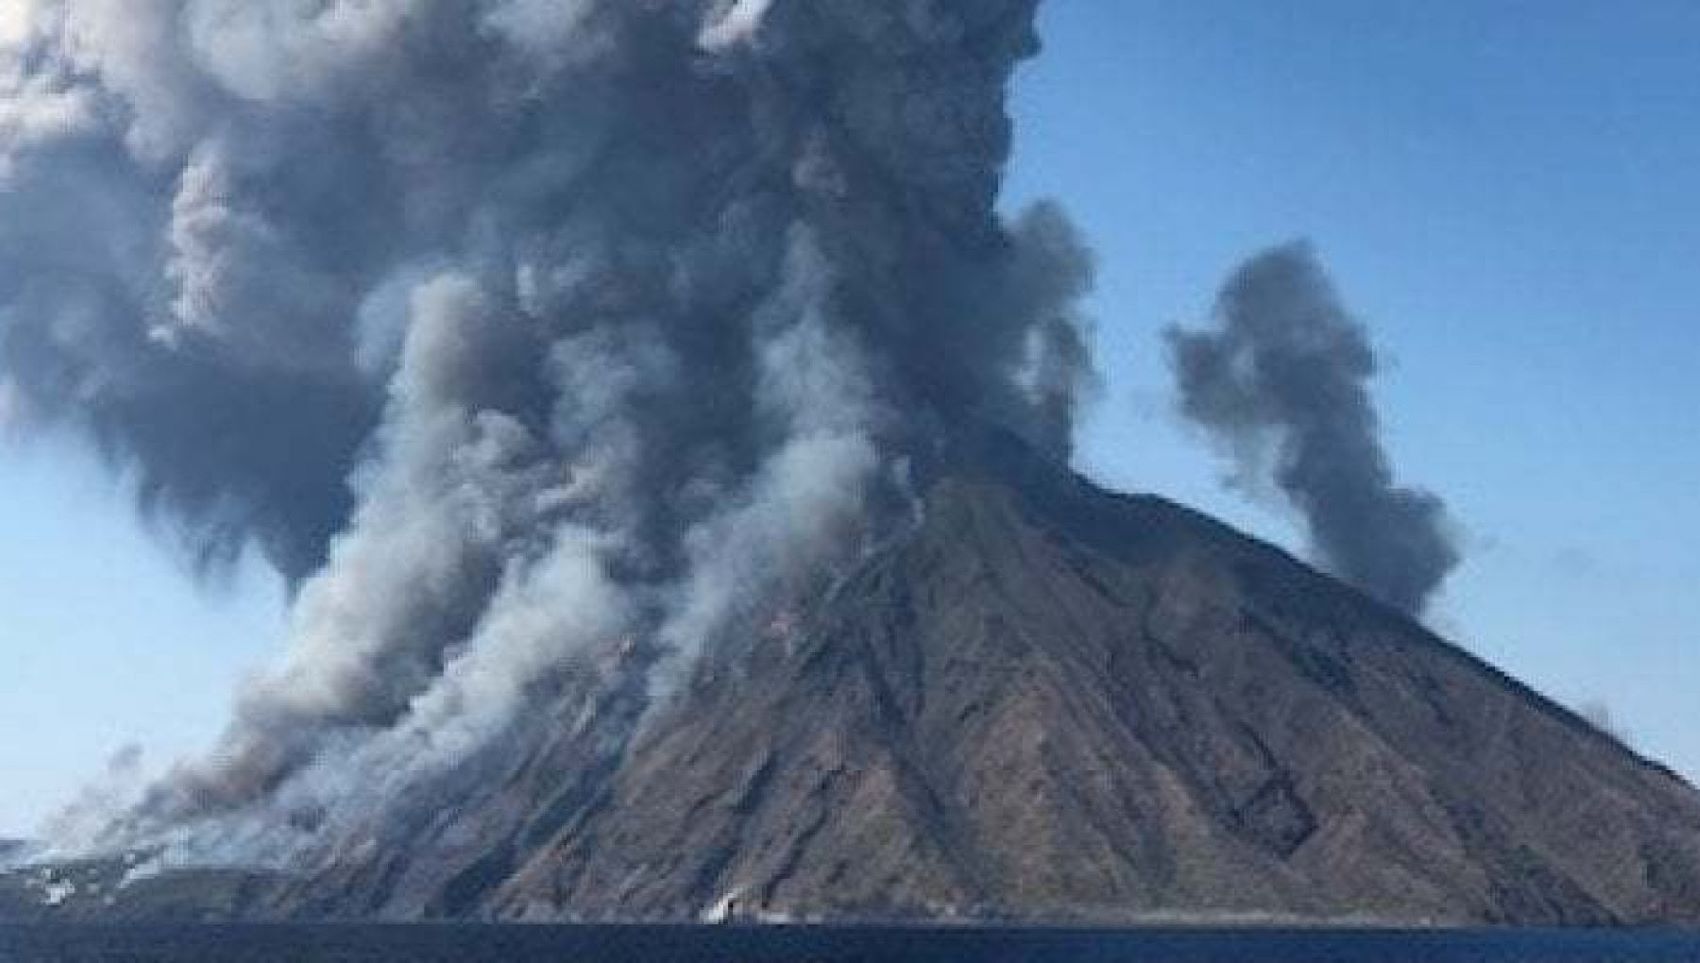 Ιταλία: Από υπερχείλιση λάβας στο ηφαίστειο Στρόμπολι προκλήθηκε τσουνάμι 1,5 μέτρου